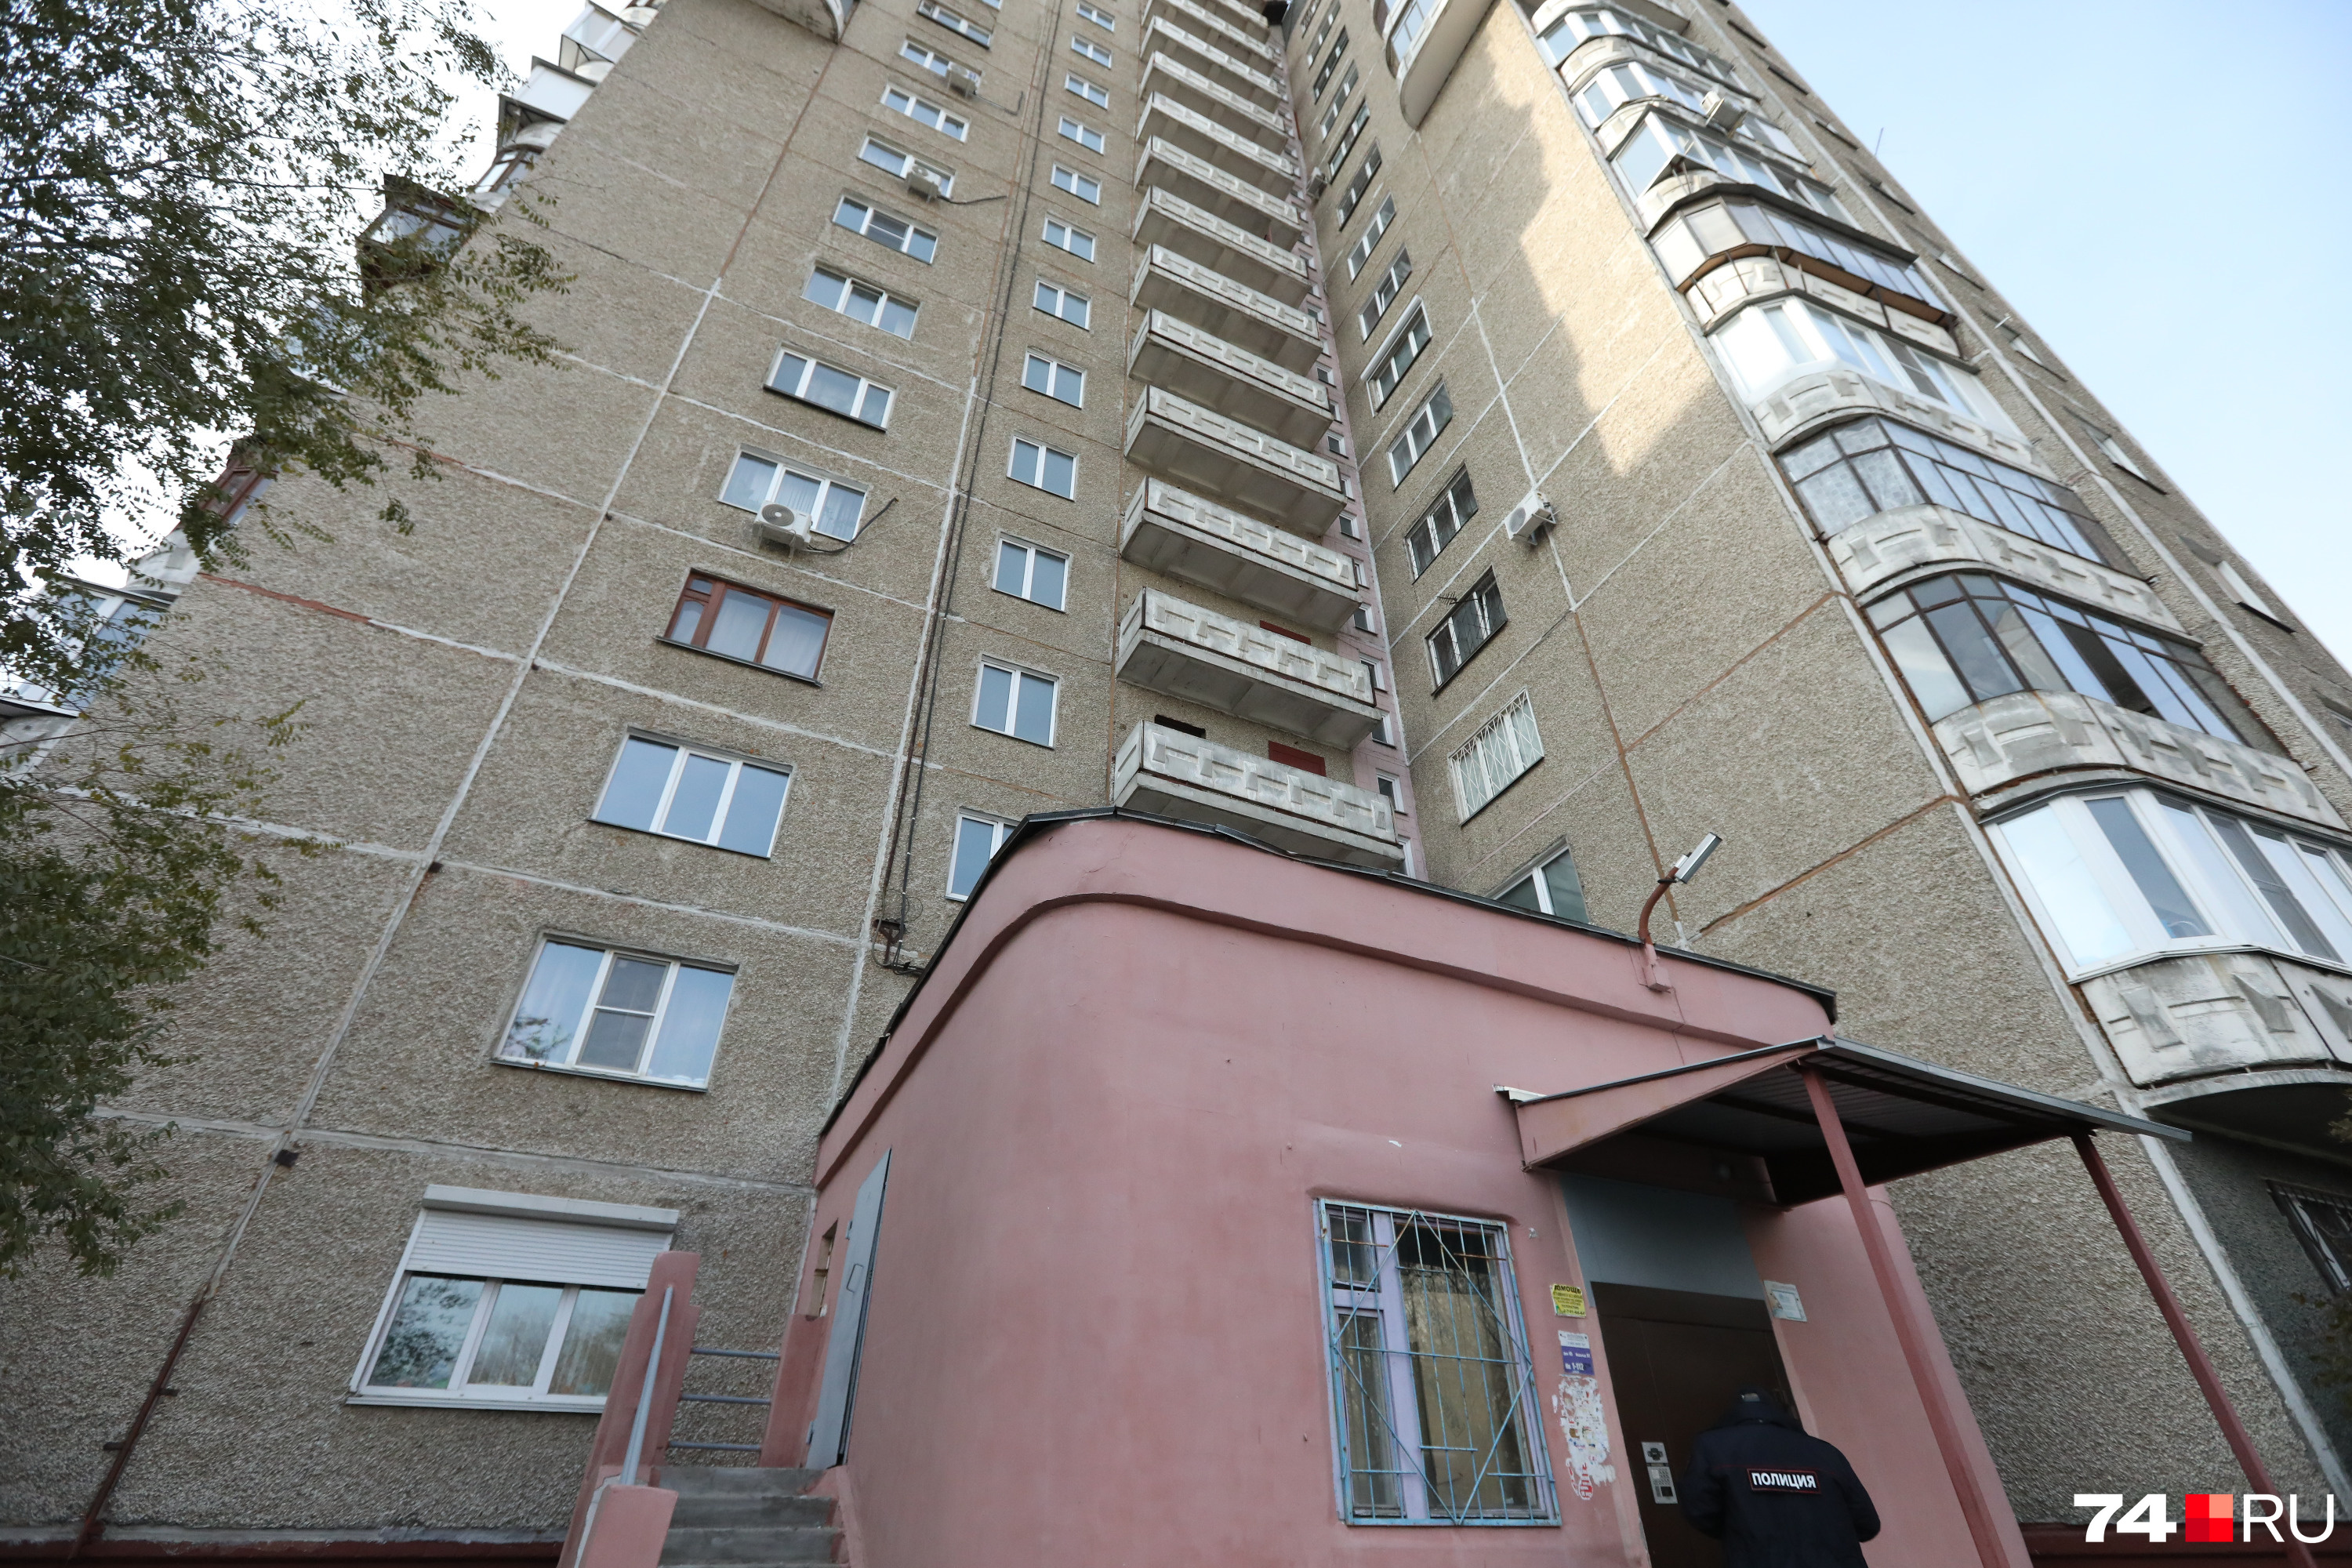 Трагедия случилась в 16-этажке на Комсомольском проспекте, 45